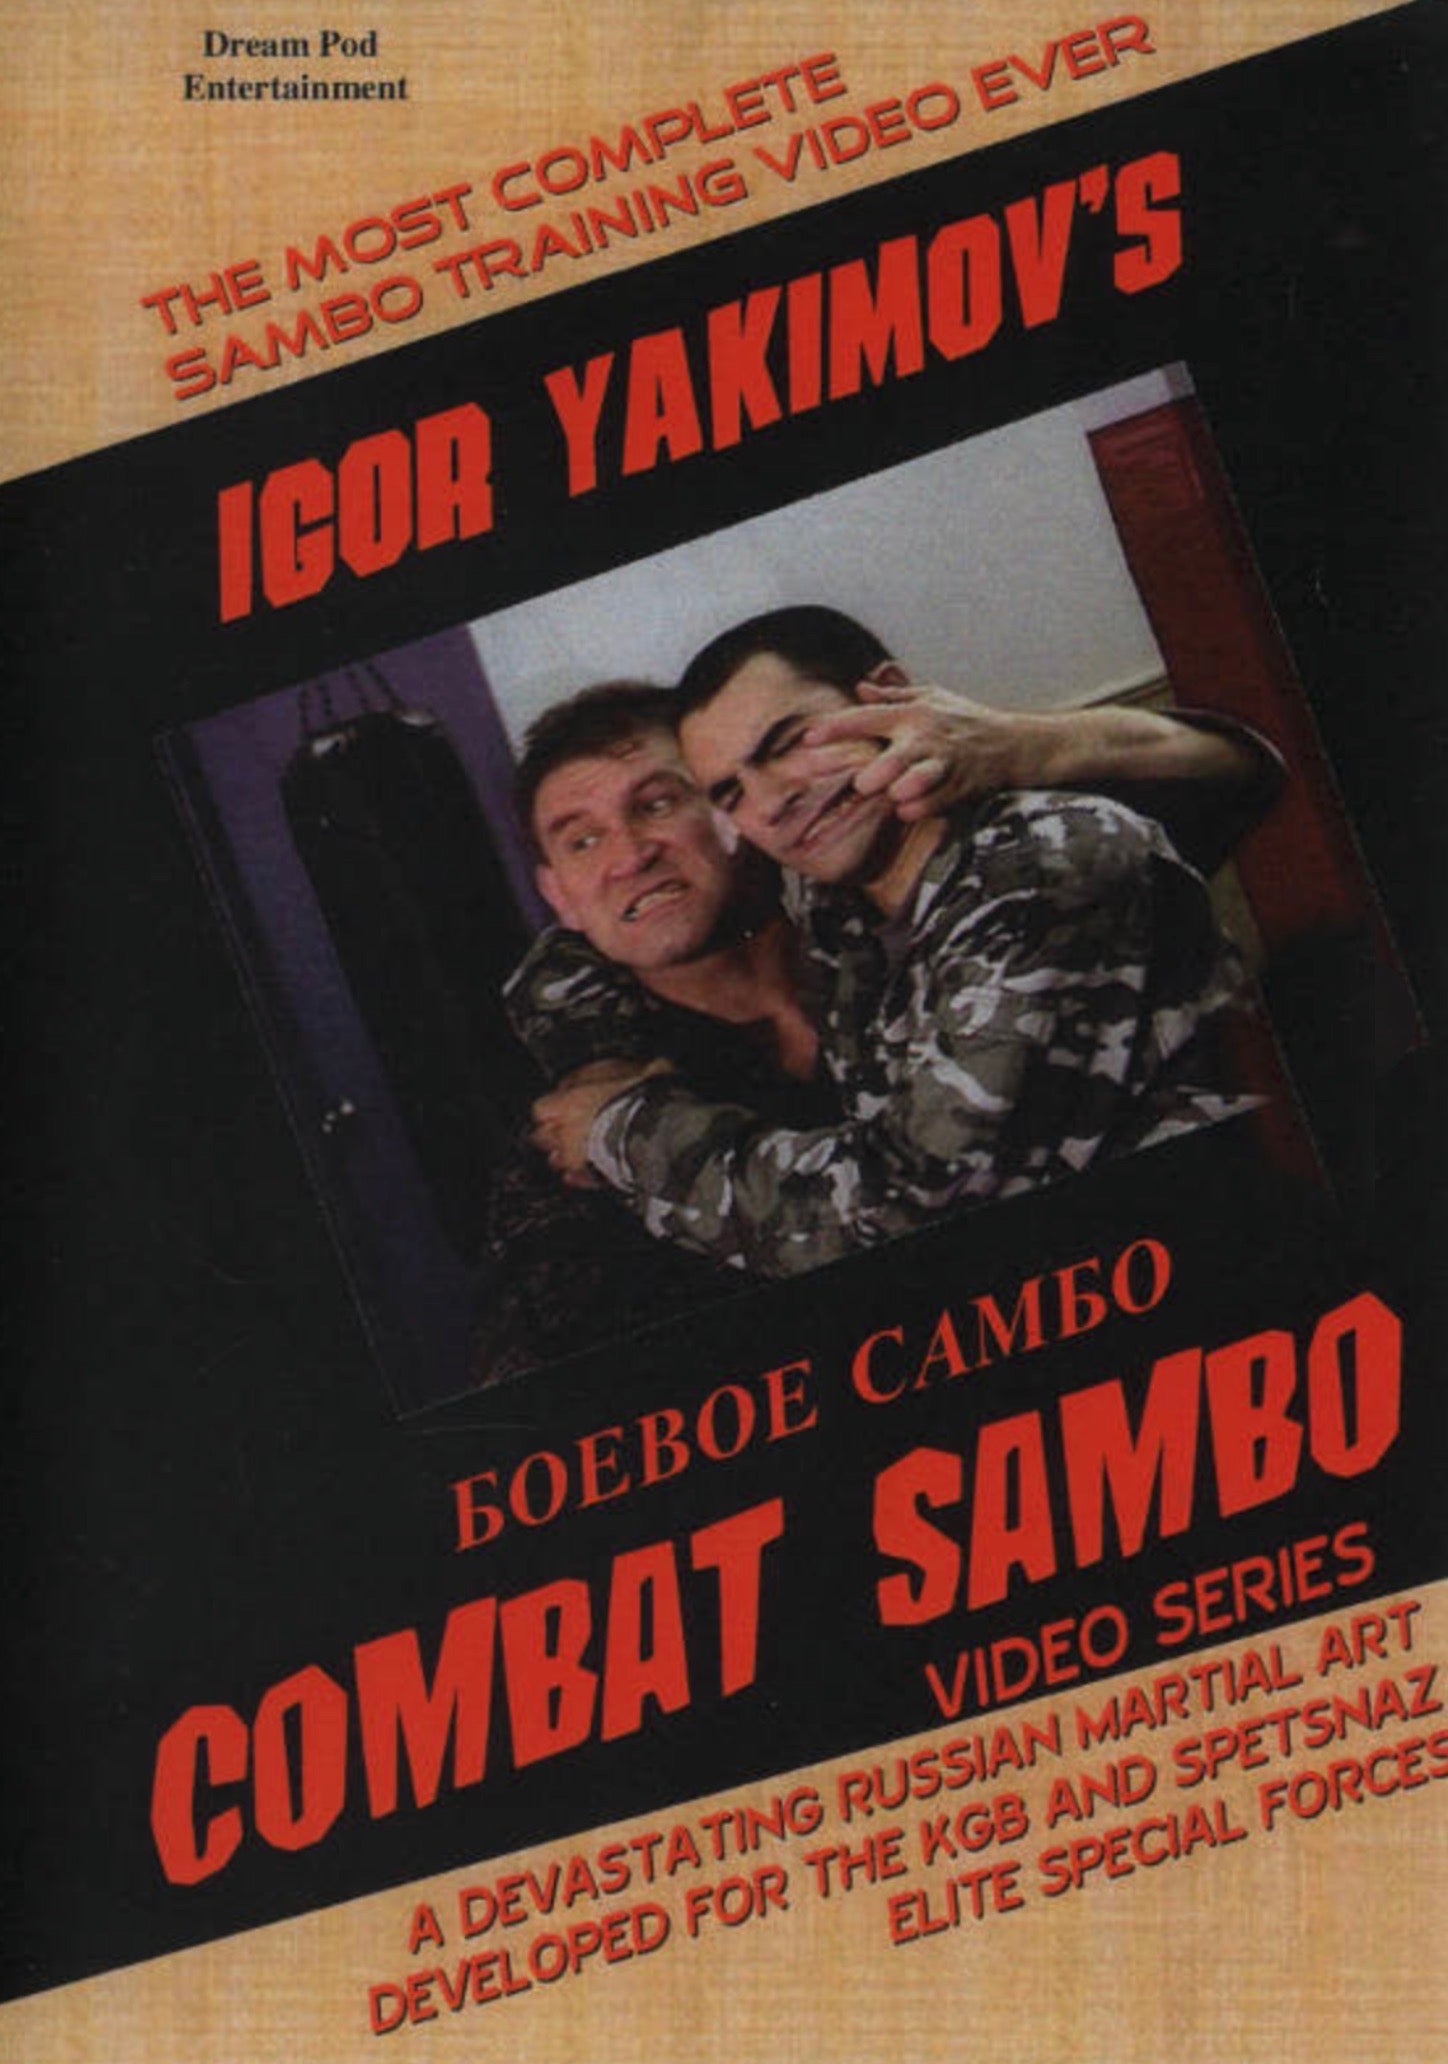 コンバット サンボ DVD 6 セット イーゴリ ヤキモフ